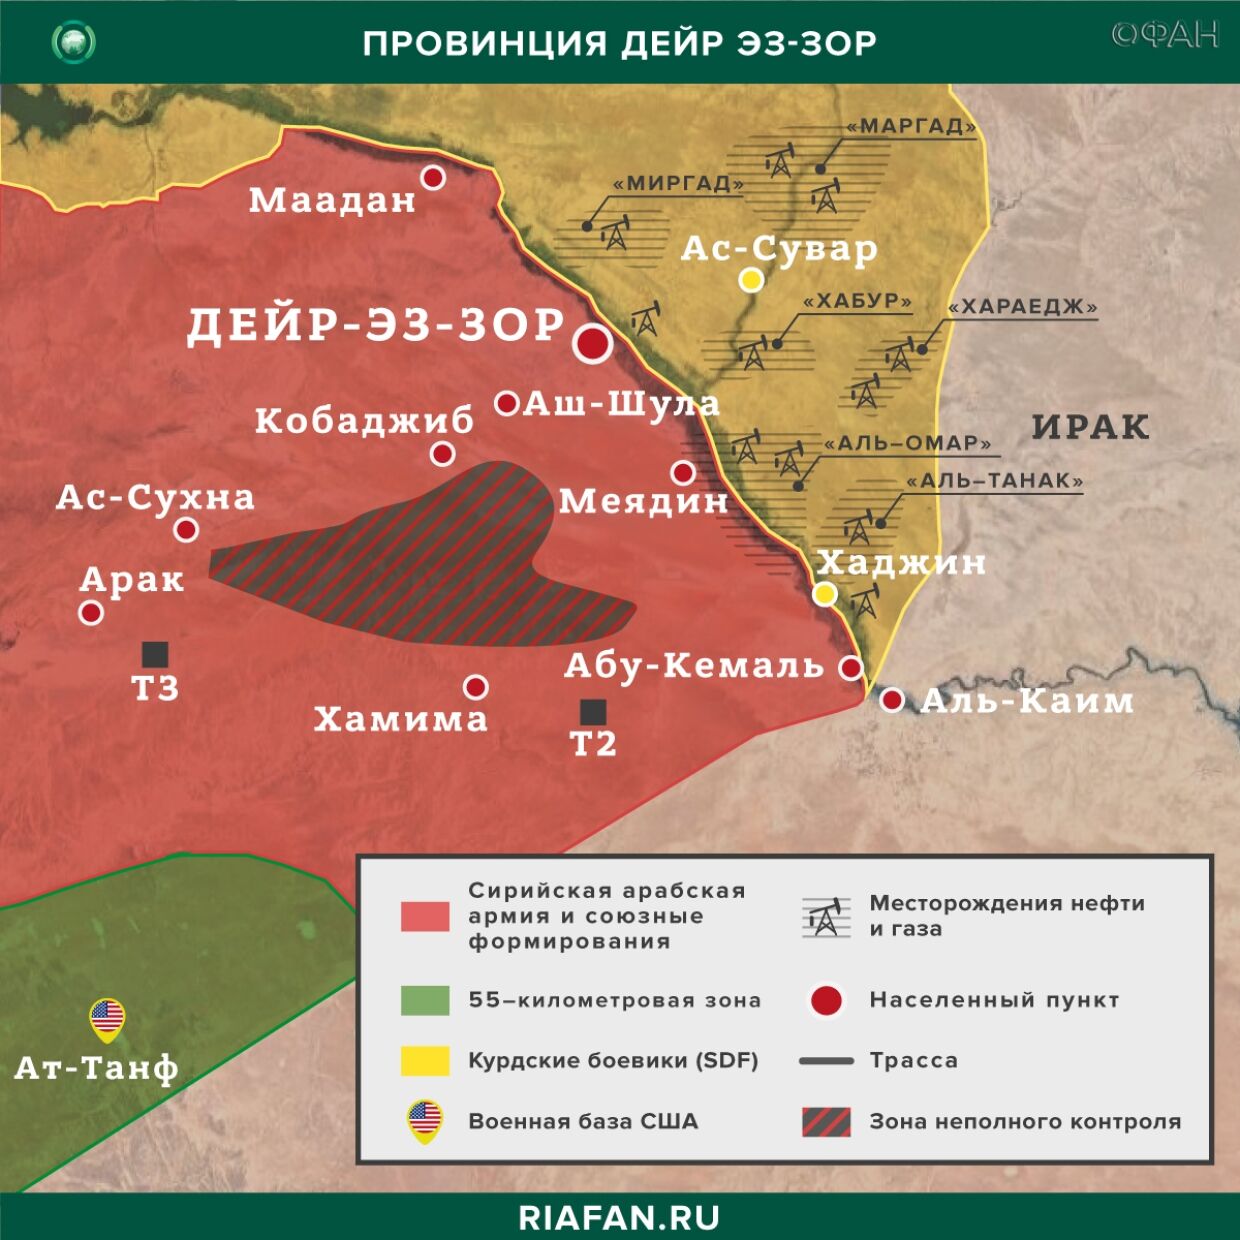 Nouvelles de Syrie 5 Juin 19.30: SDF проводят аресты в Дейр-эз-Зоре по сфабрикованным обвинениям, ХТШ* признана запрещенной в РФ